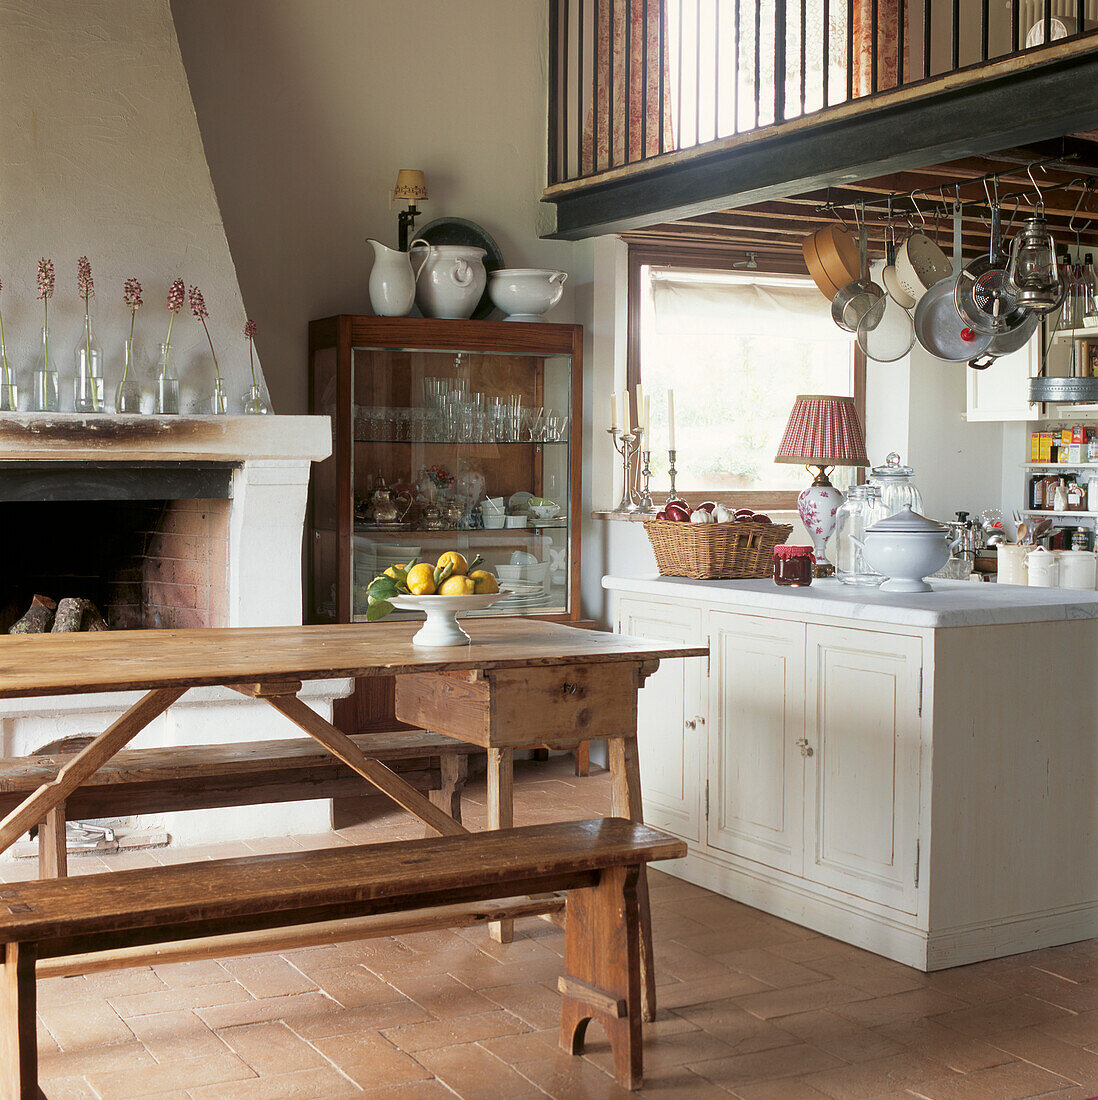 Offene rustikale toskanische Küche mit Familienfrühstückstisch und Bänken